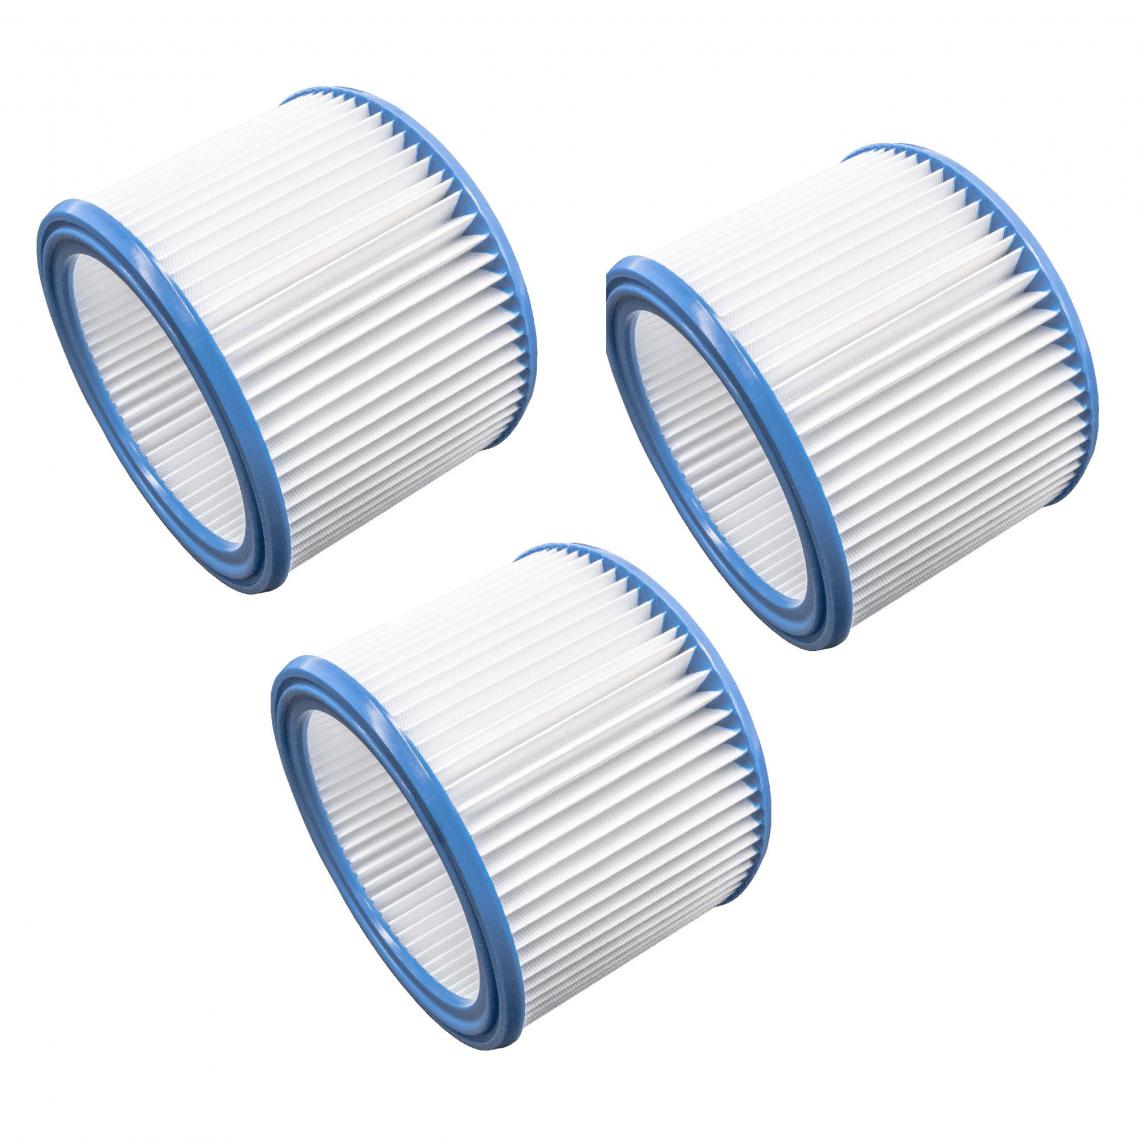 Vhbw - vhbw Set de filtres 3x Filtre plissé compatible avec Nilfisk / Alto / Wap Attix 791, 791-21 aspirateur à sec ou humide - Filtre à cartouche - Accessoire entretien des sols